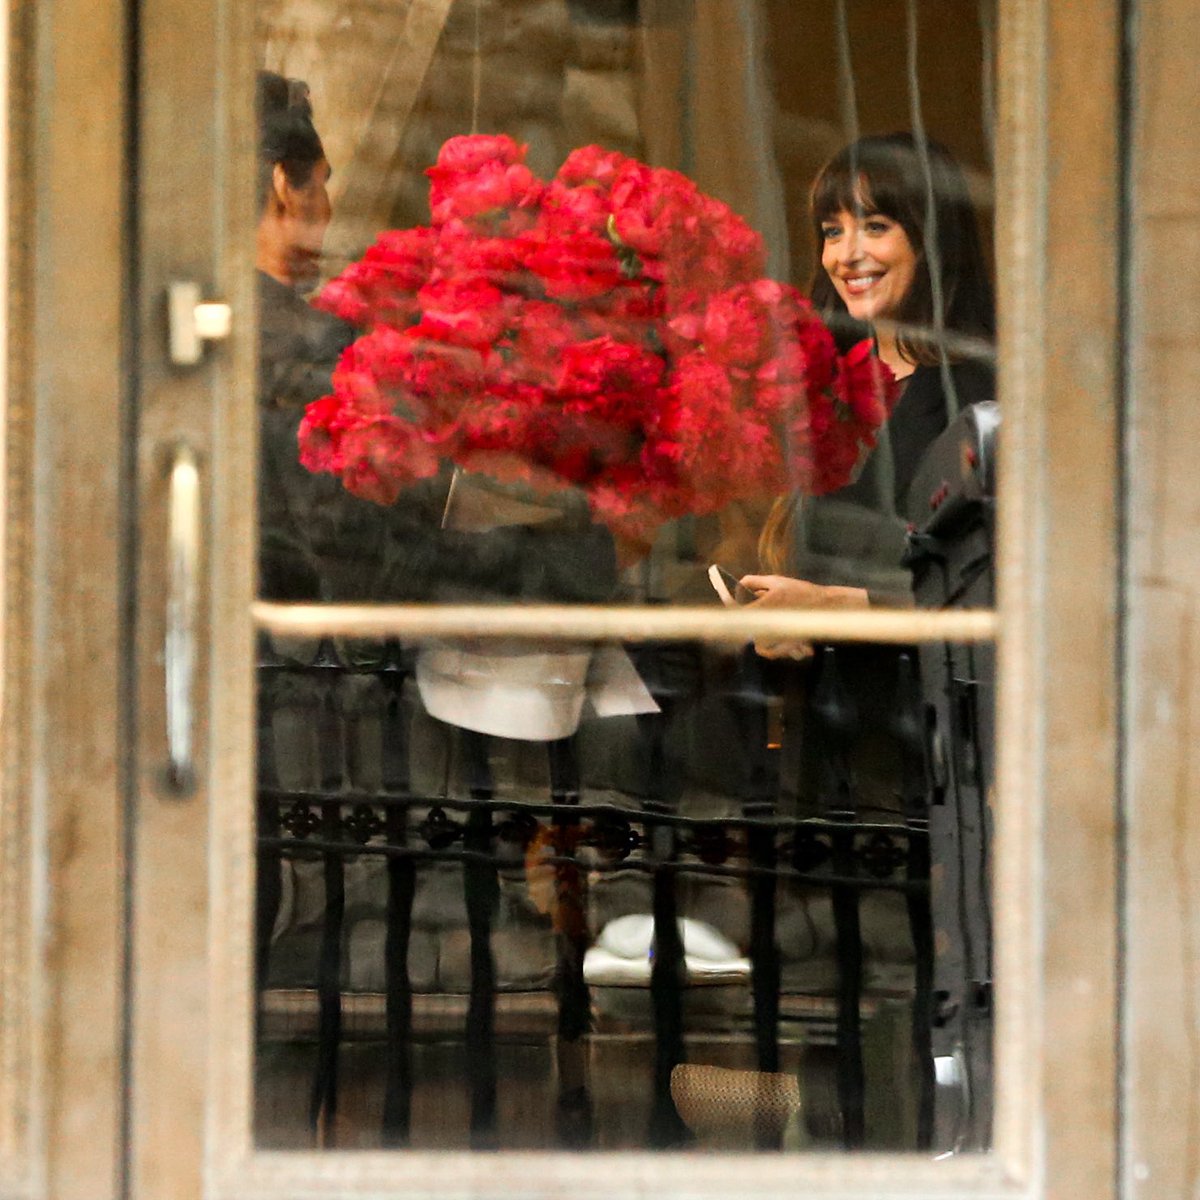 Imagina abrir a porta e dar de cara com Pedro Pascal trazendo um buquê de rosas para você? 🌹 

📸| Pedro e Dakota Johnson nos bastidores de 'Materialists', longa que está sendo gravado em Nova York.